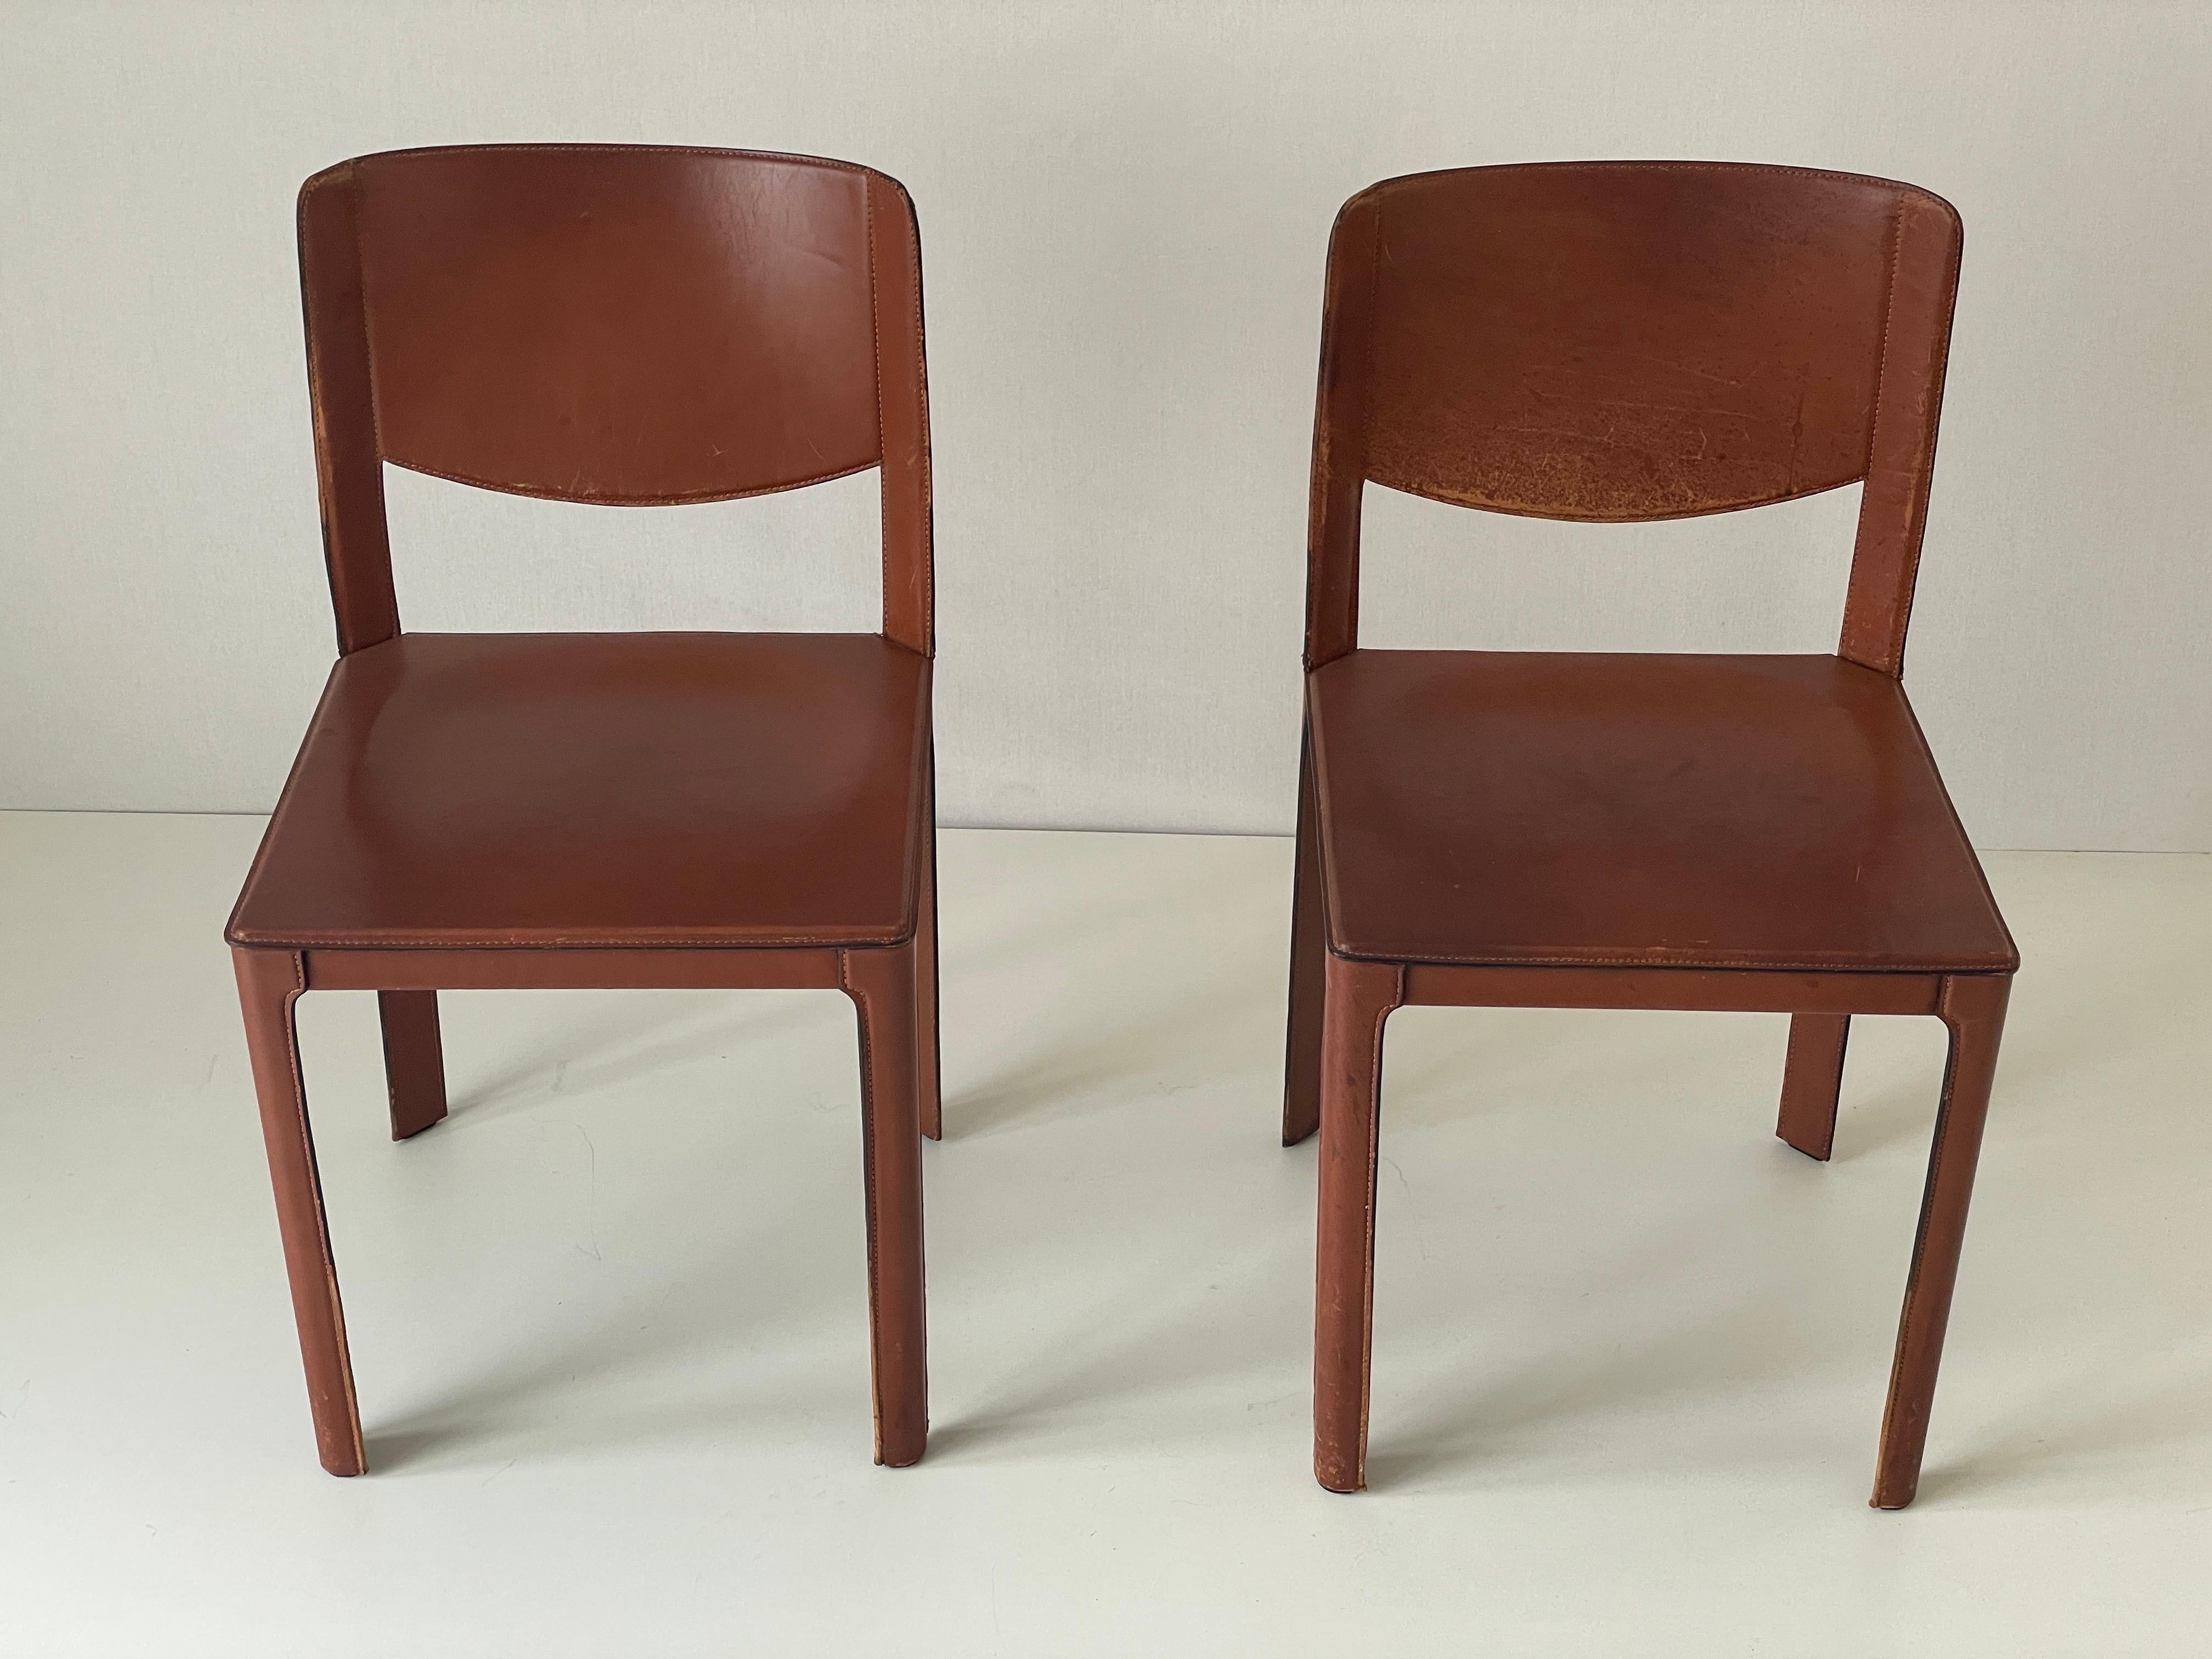 Paire de chaises italiennes en cuir brun par Matteo Grassi, années 1970, Italie

Mesures :

Hauteur : 80 cm
Hauteur du siège : 45 cm
Sièges : 44 cm x 44 cm

N'hésitez pas à nous contacter si vous avez des questions.